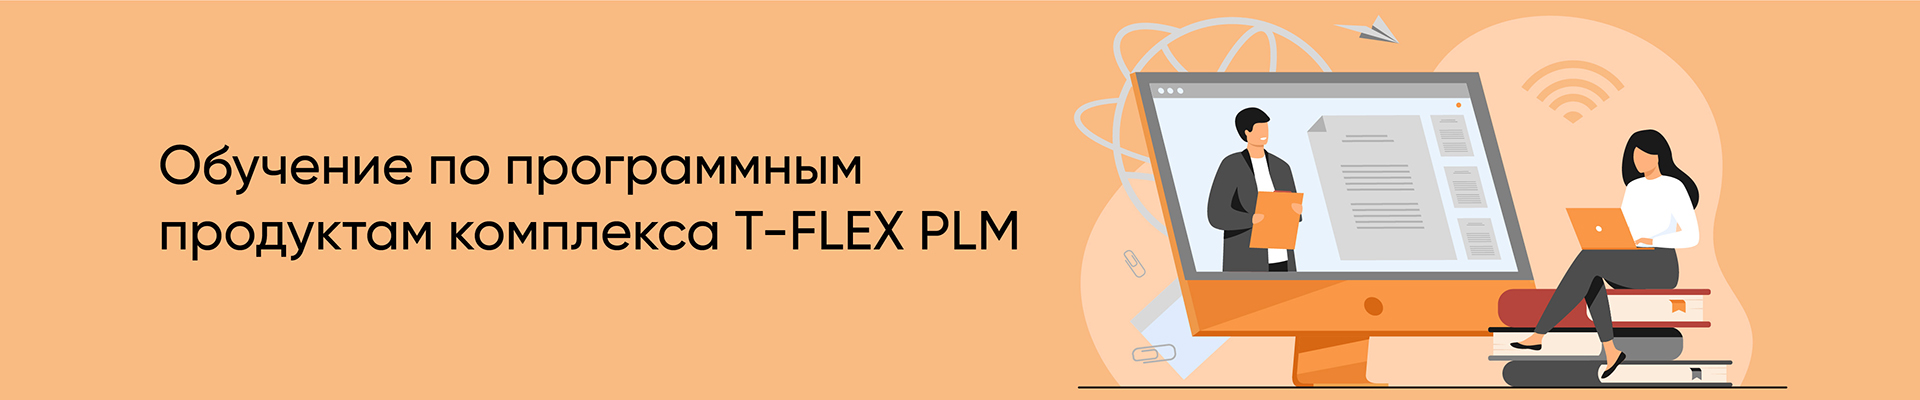 Обучение по программным продуктам комплекса Т-FLEX PLM